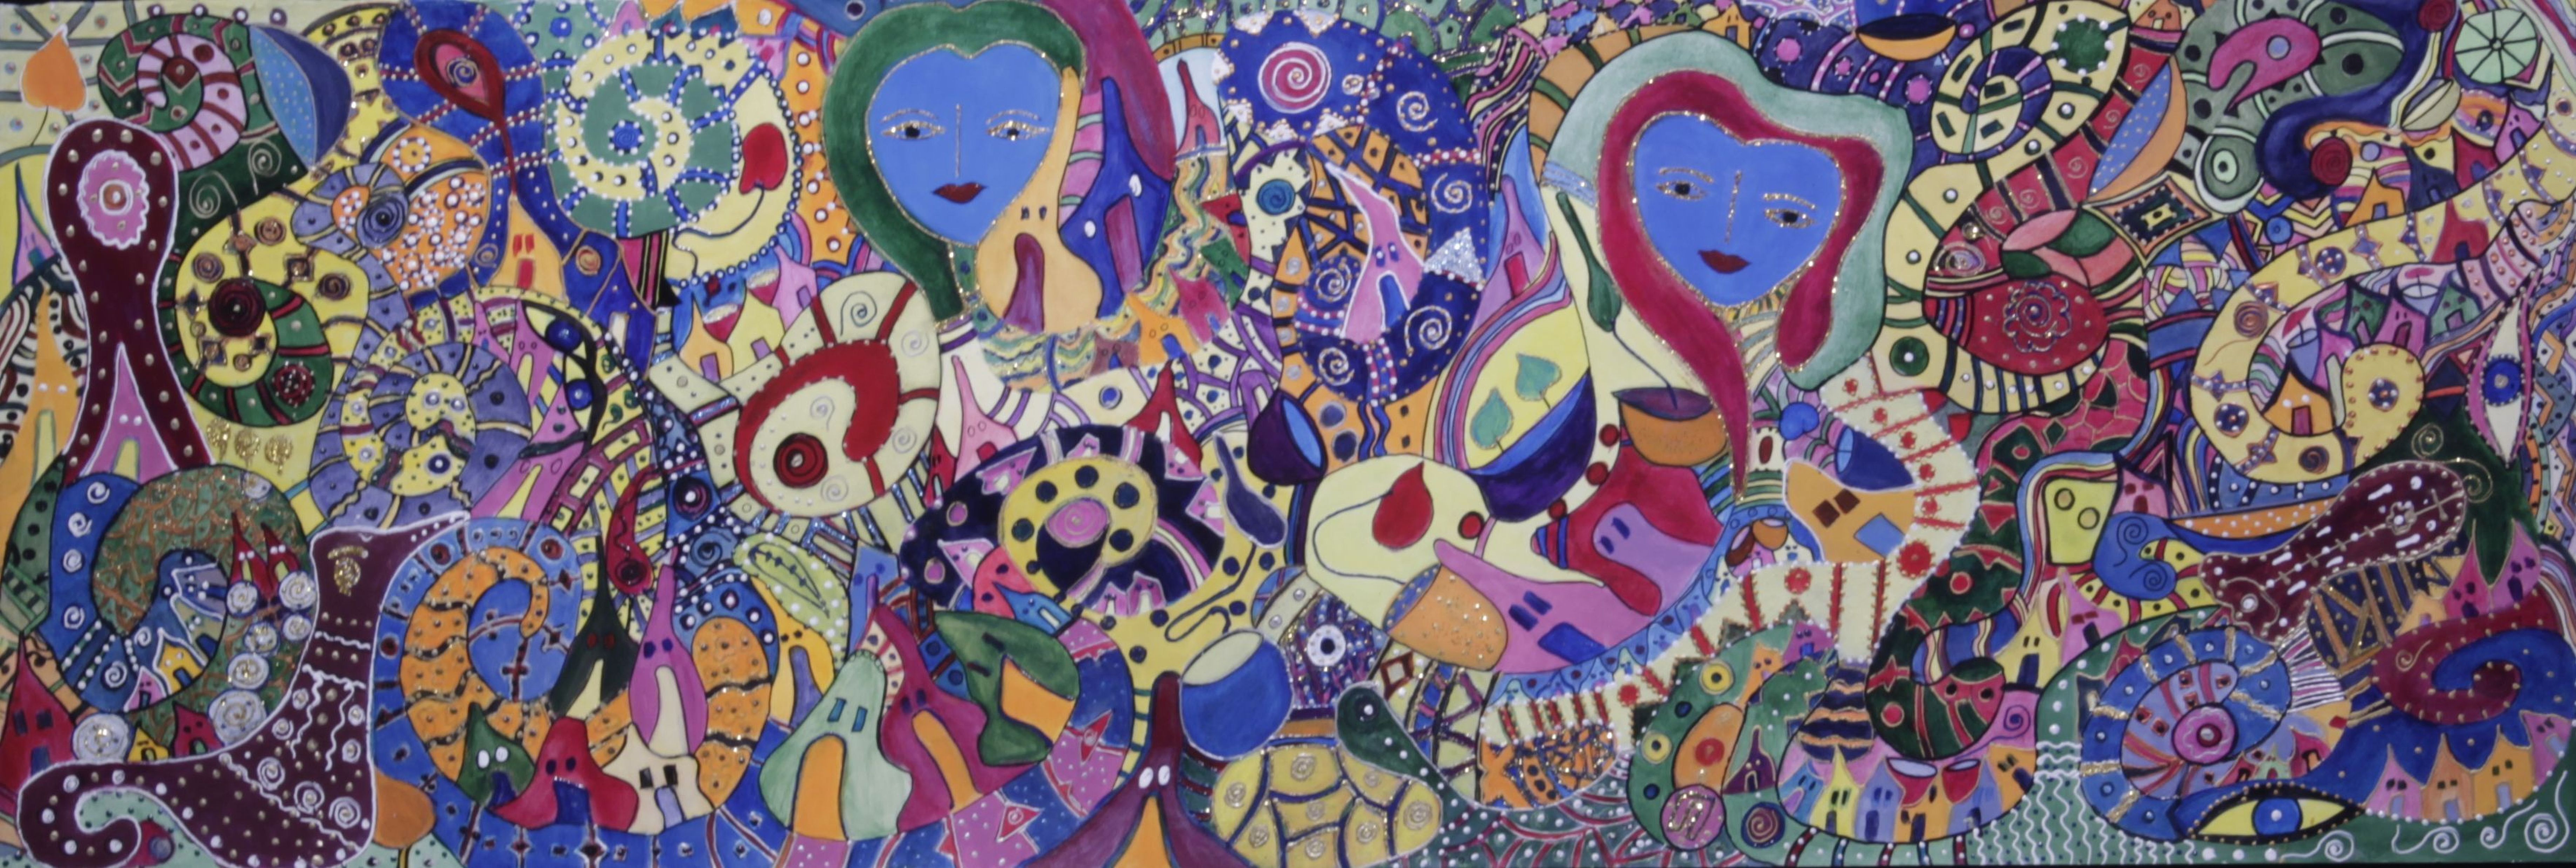 Η Ευδ. Παπασάββα ζωγραφίζει τα όνειρά της: «Όλα από την Αρχή, η δική μου ιστορία»